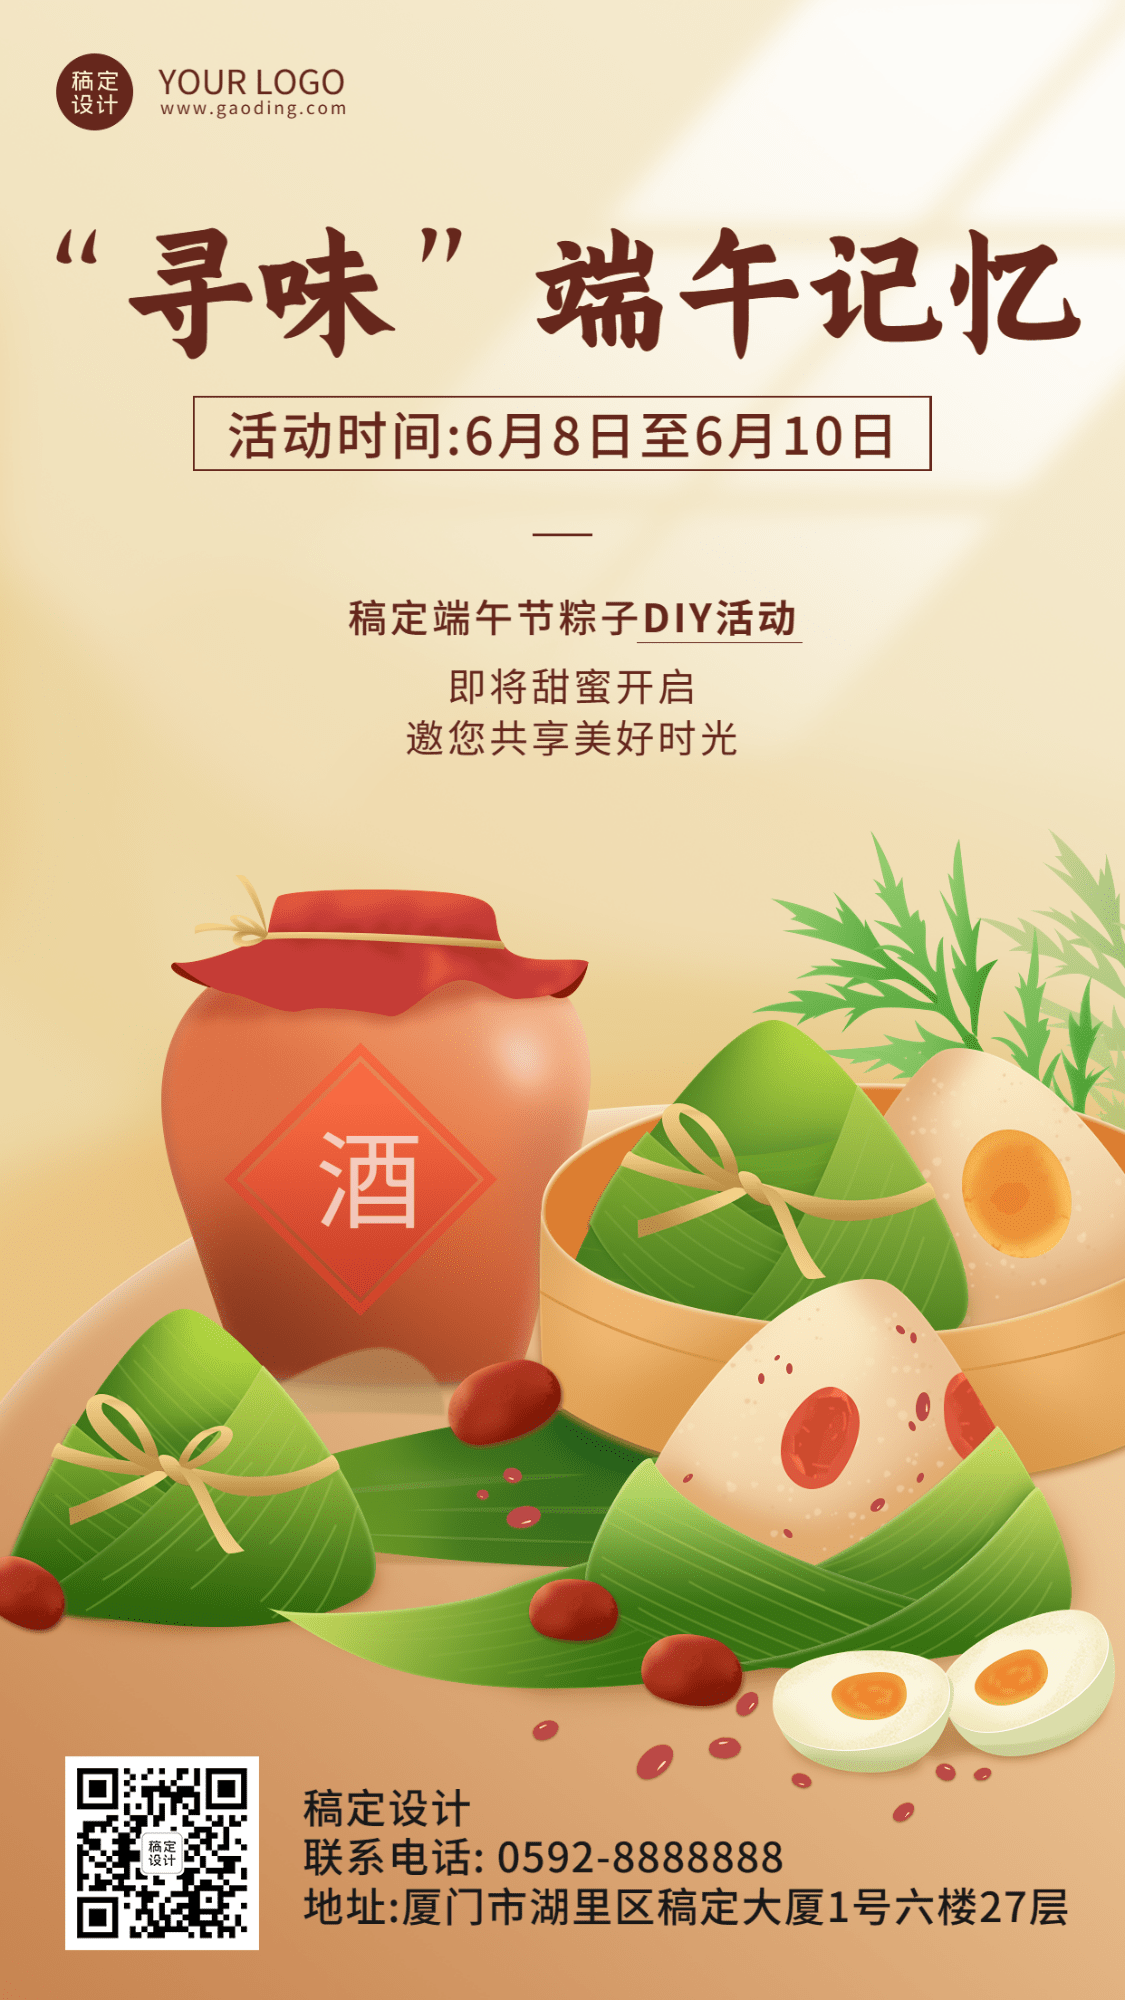 端午节粽子DIY活动插画手机海报